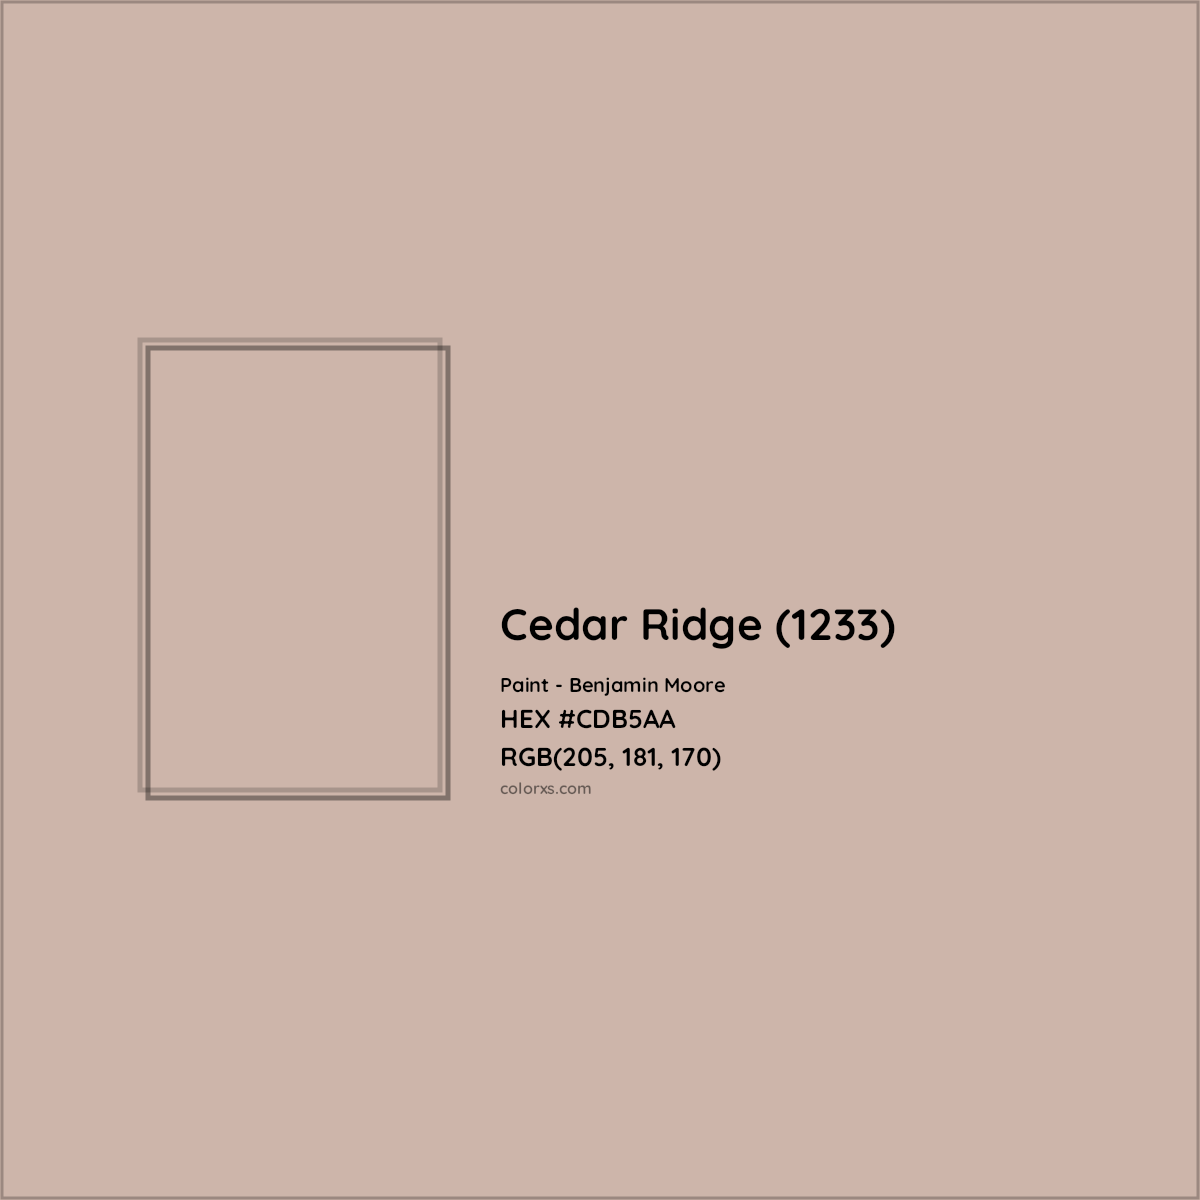 HEX #CDB5AA Cedar Ridge (1233) Paint Benjamin Moore - Color Code